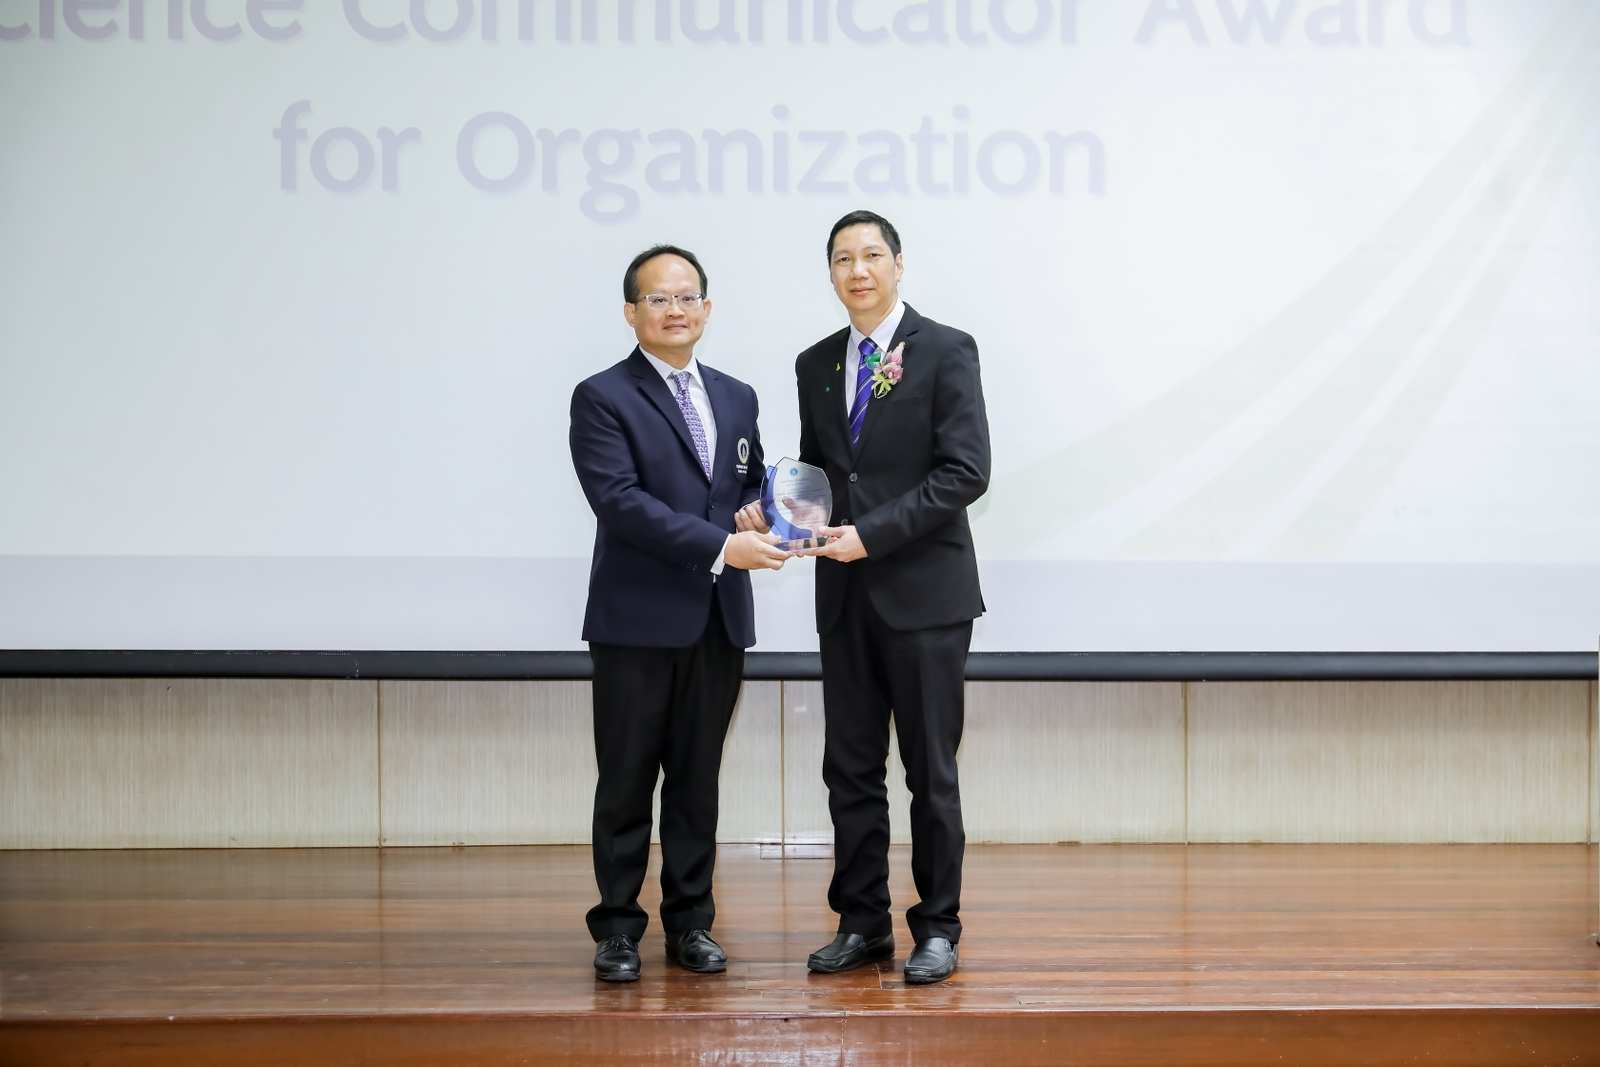 อพวช. รับรางวัล Mahidol Science Communicator Award 2020 ประเภท องค์กรสื่อสารวิทยาศาสตร์ดีเด่น